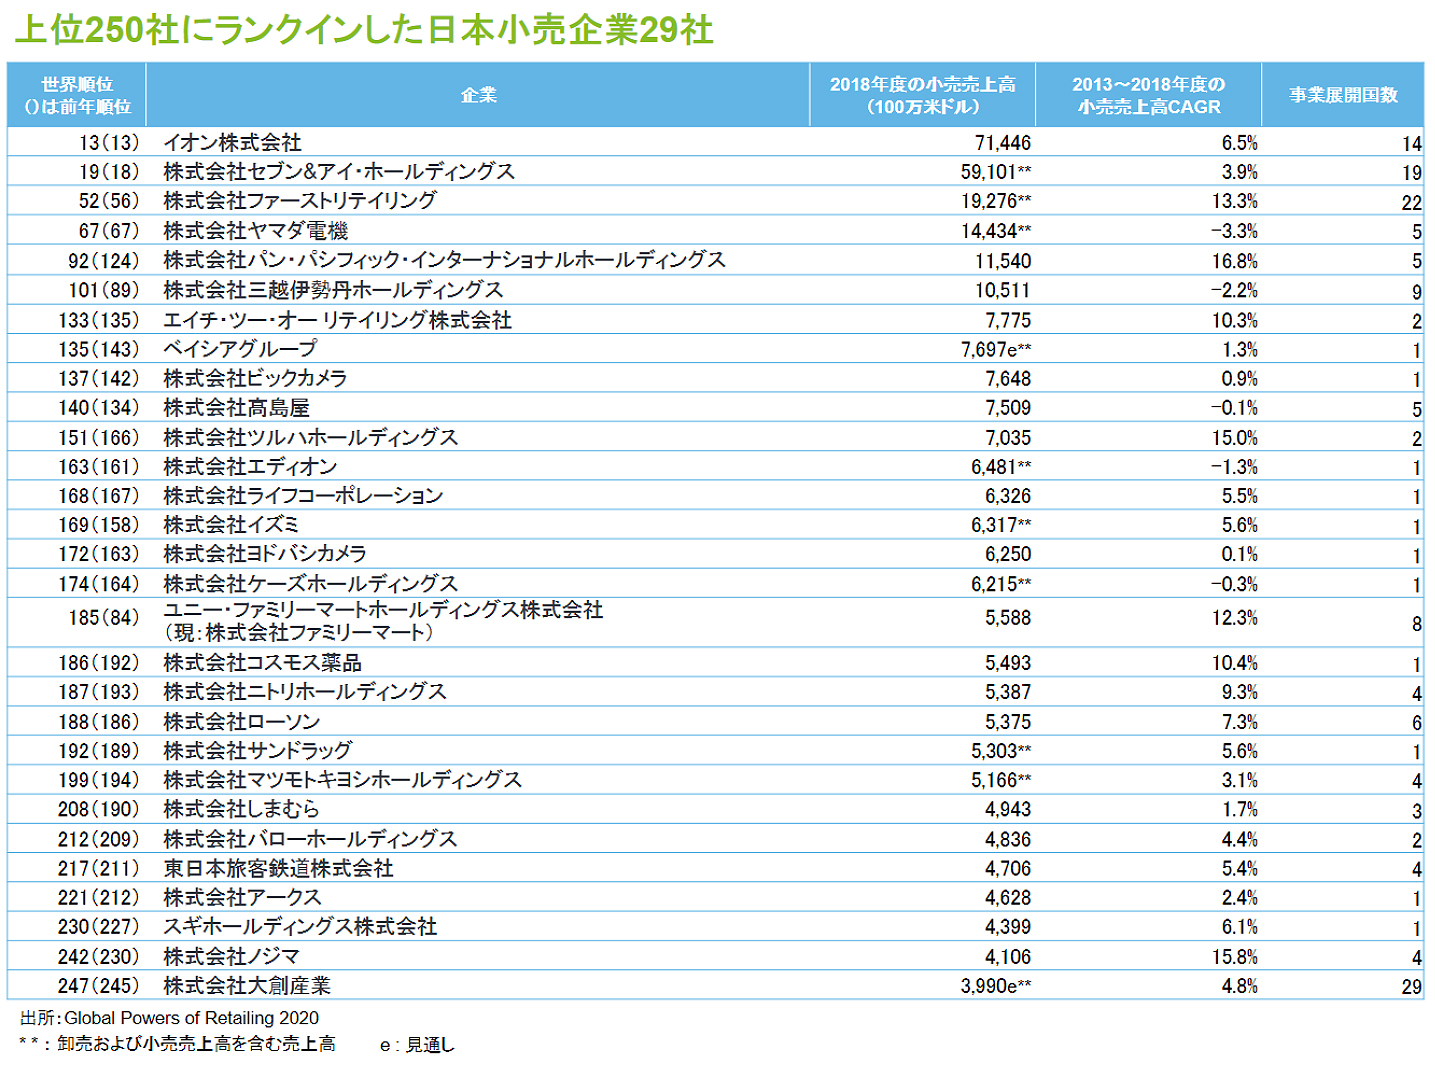 日本企業最上位はイオン 世界の小売業ランキング発表 ニュース 流通 Jacom 農業協同組合新聞